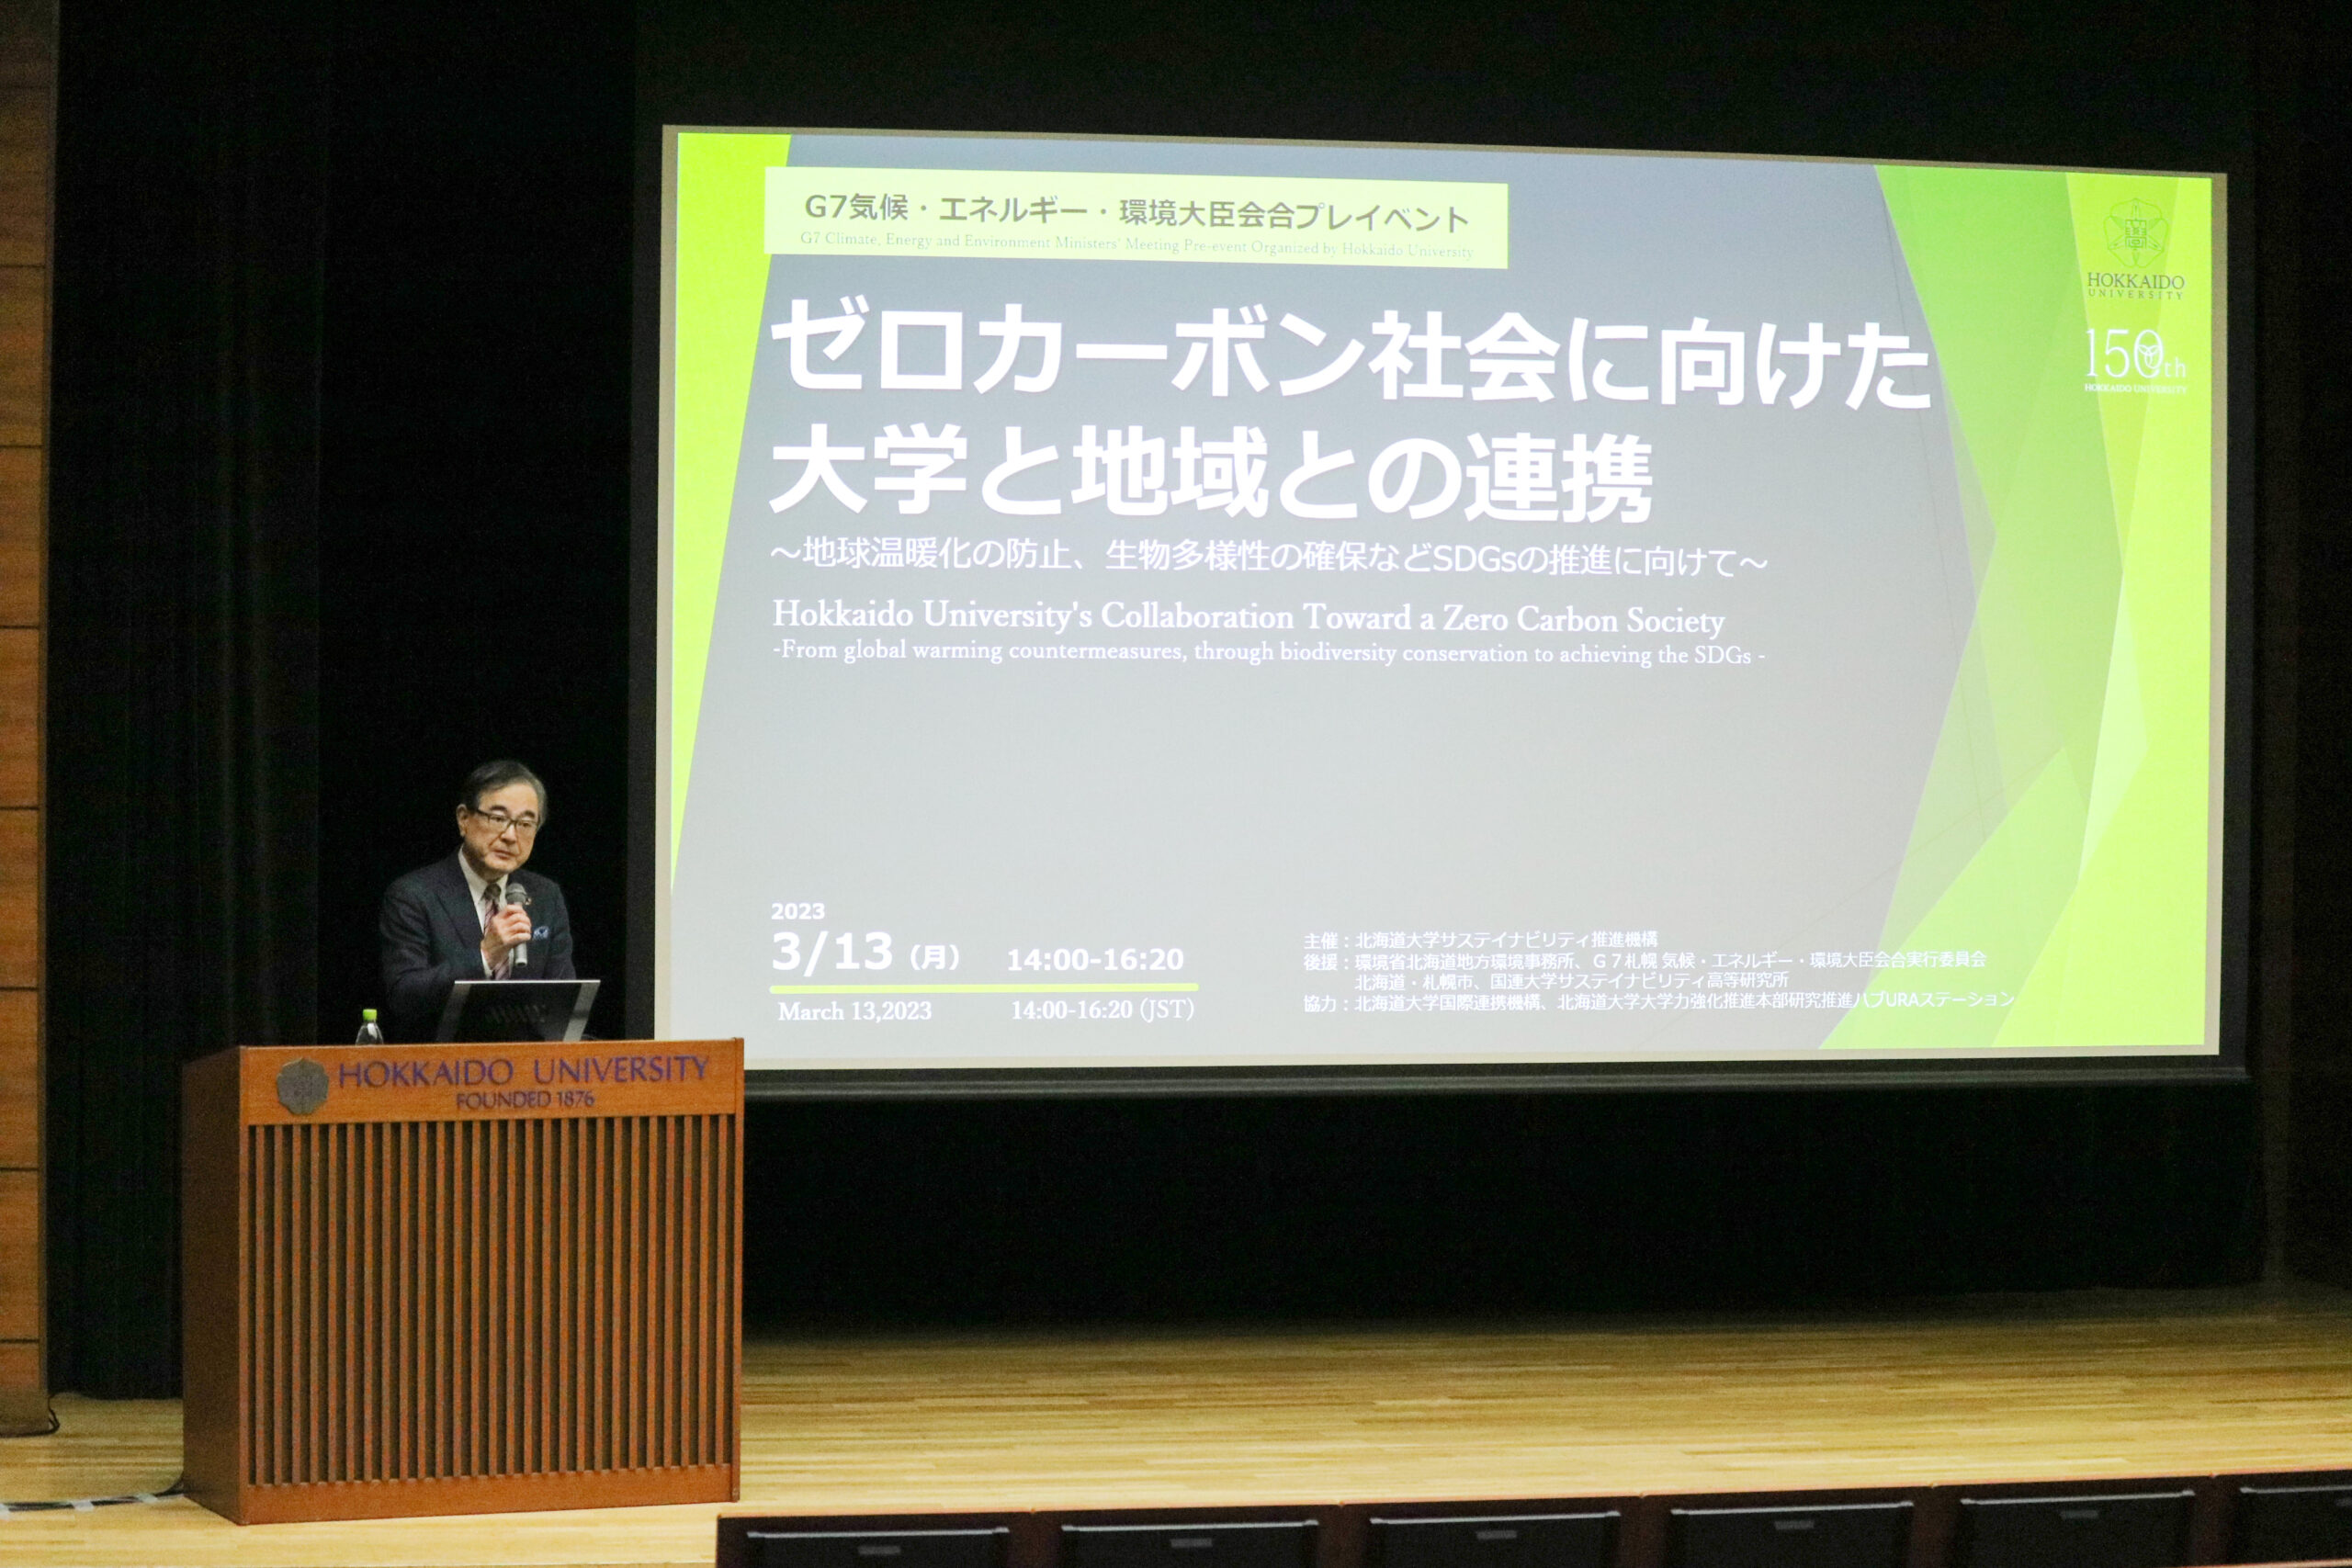 Hokkaido University President Kiyohiro Houkin greeting the attendees.